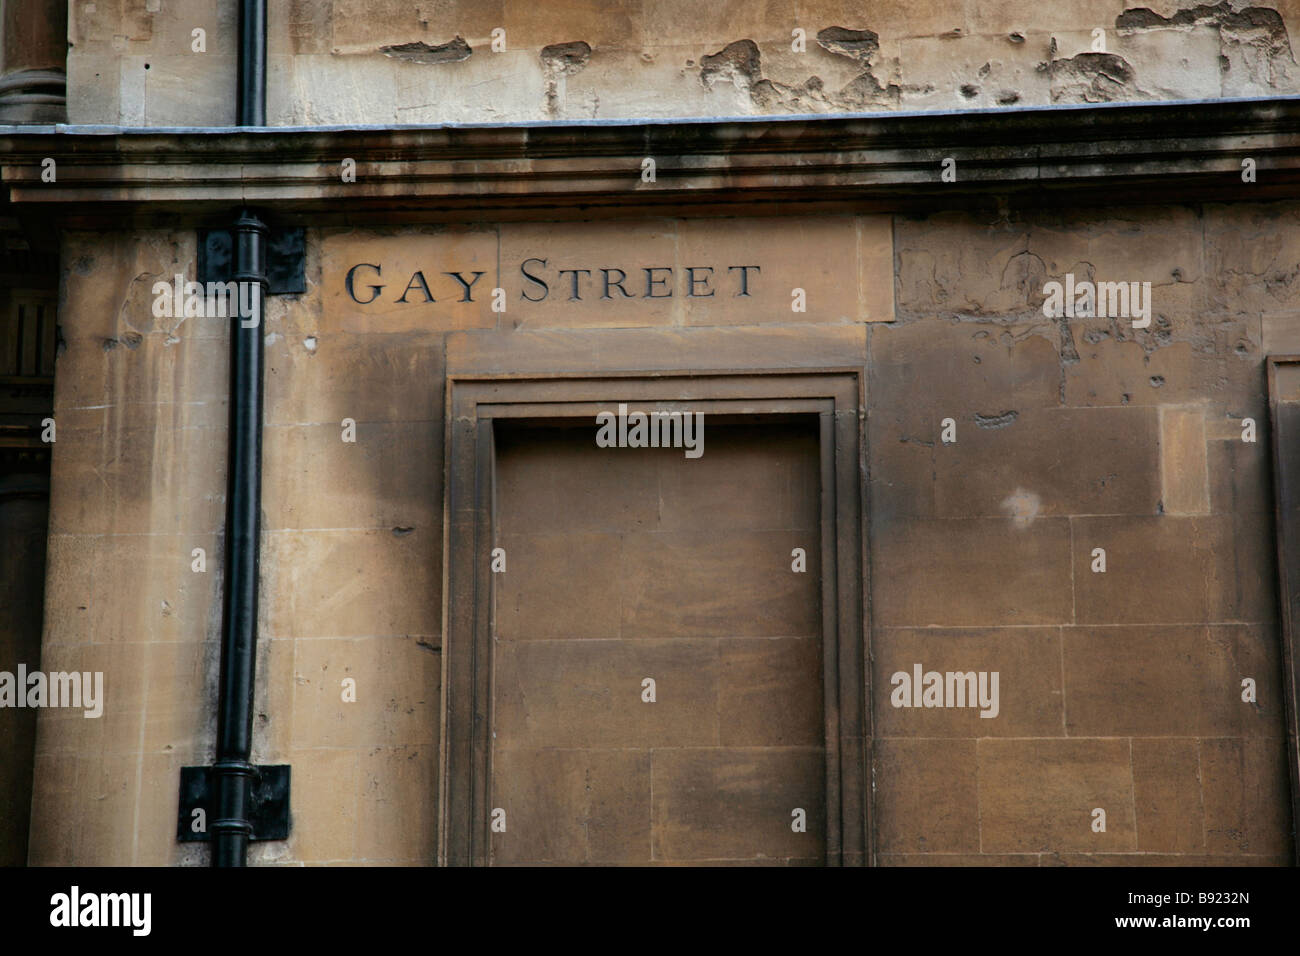 Gay Street, street sign sur mur de pierre baignoire, baignoire, Somerset, UK Banque D'Images